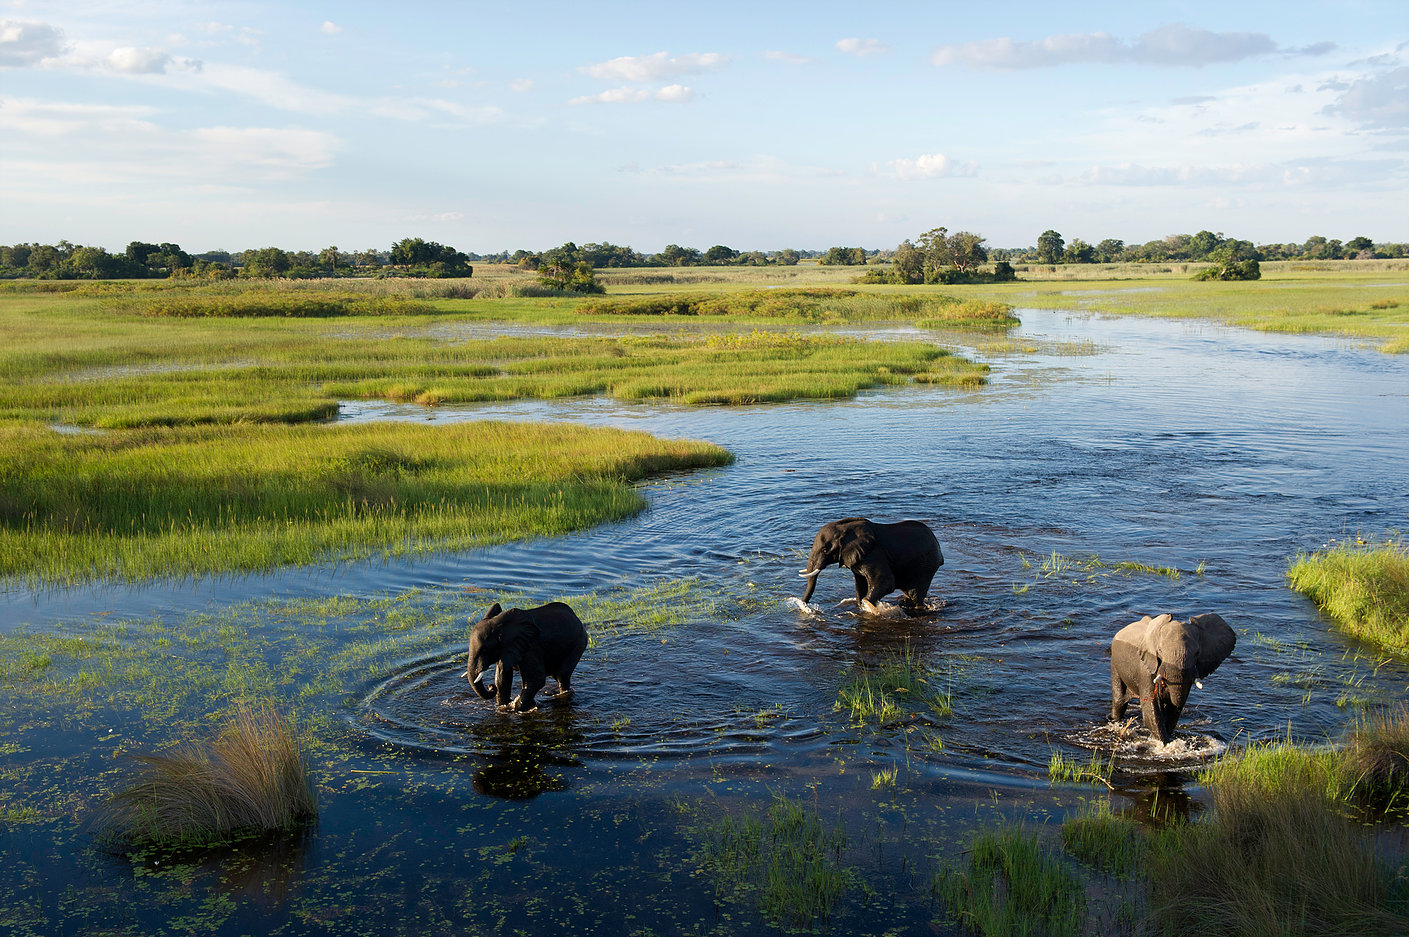 3Elaphants roaming through Okavango delta